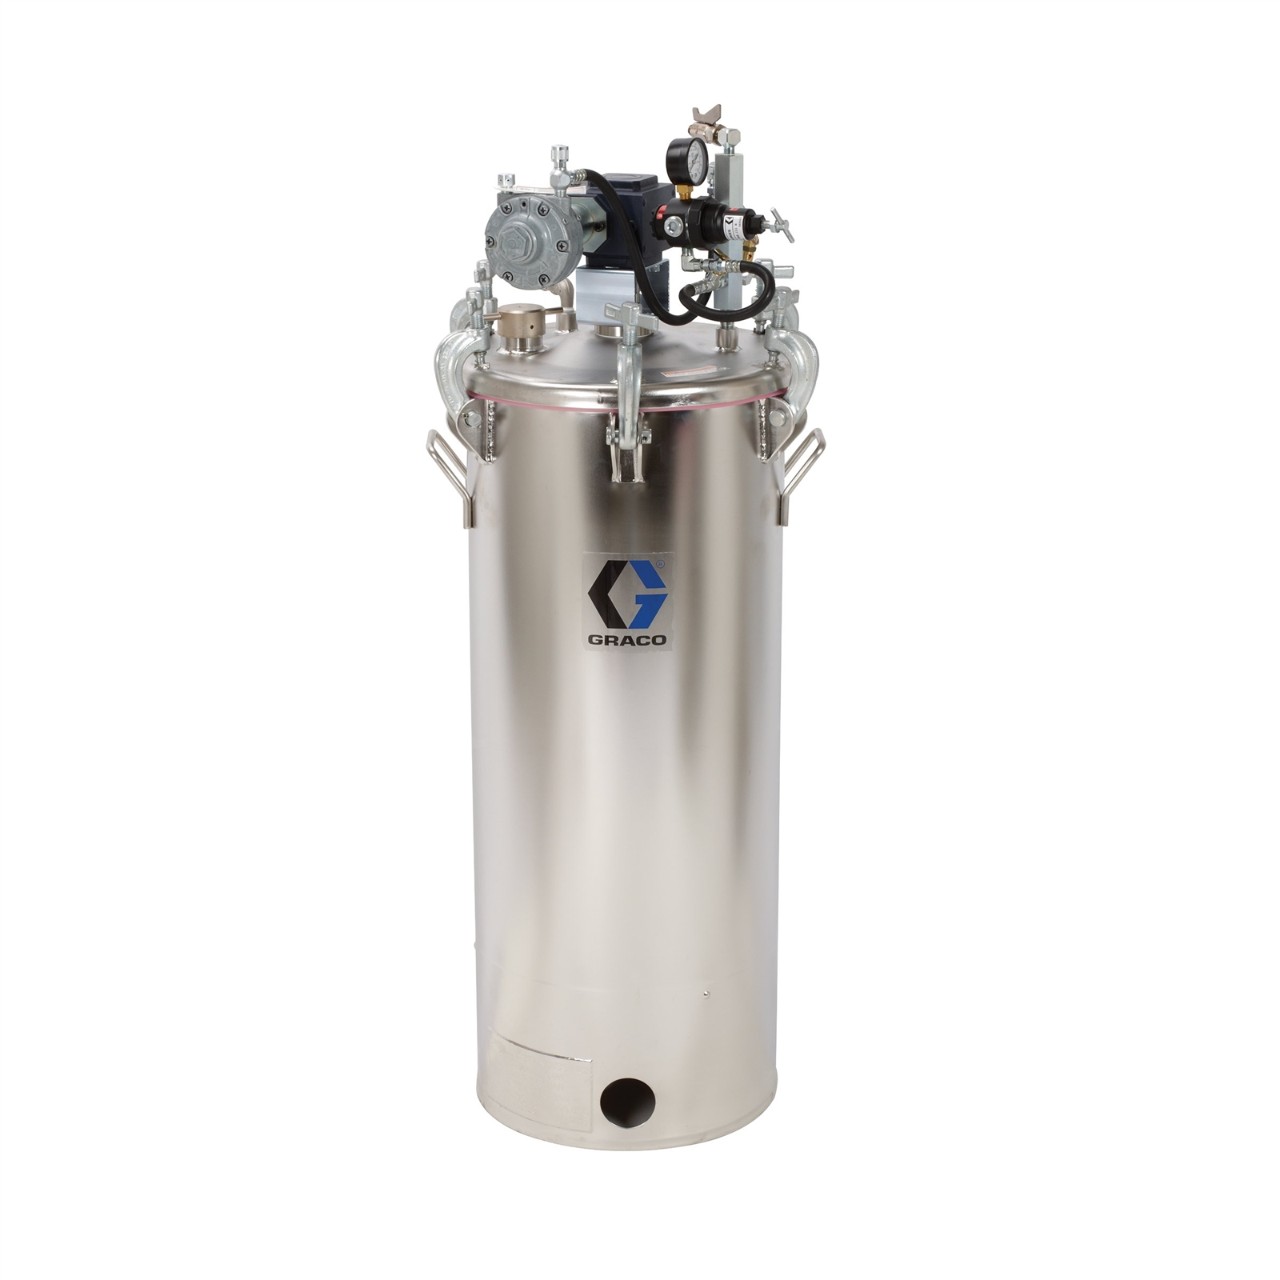 15-gallon pressure pot with agitator